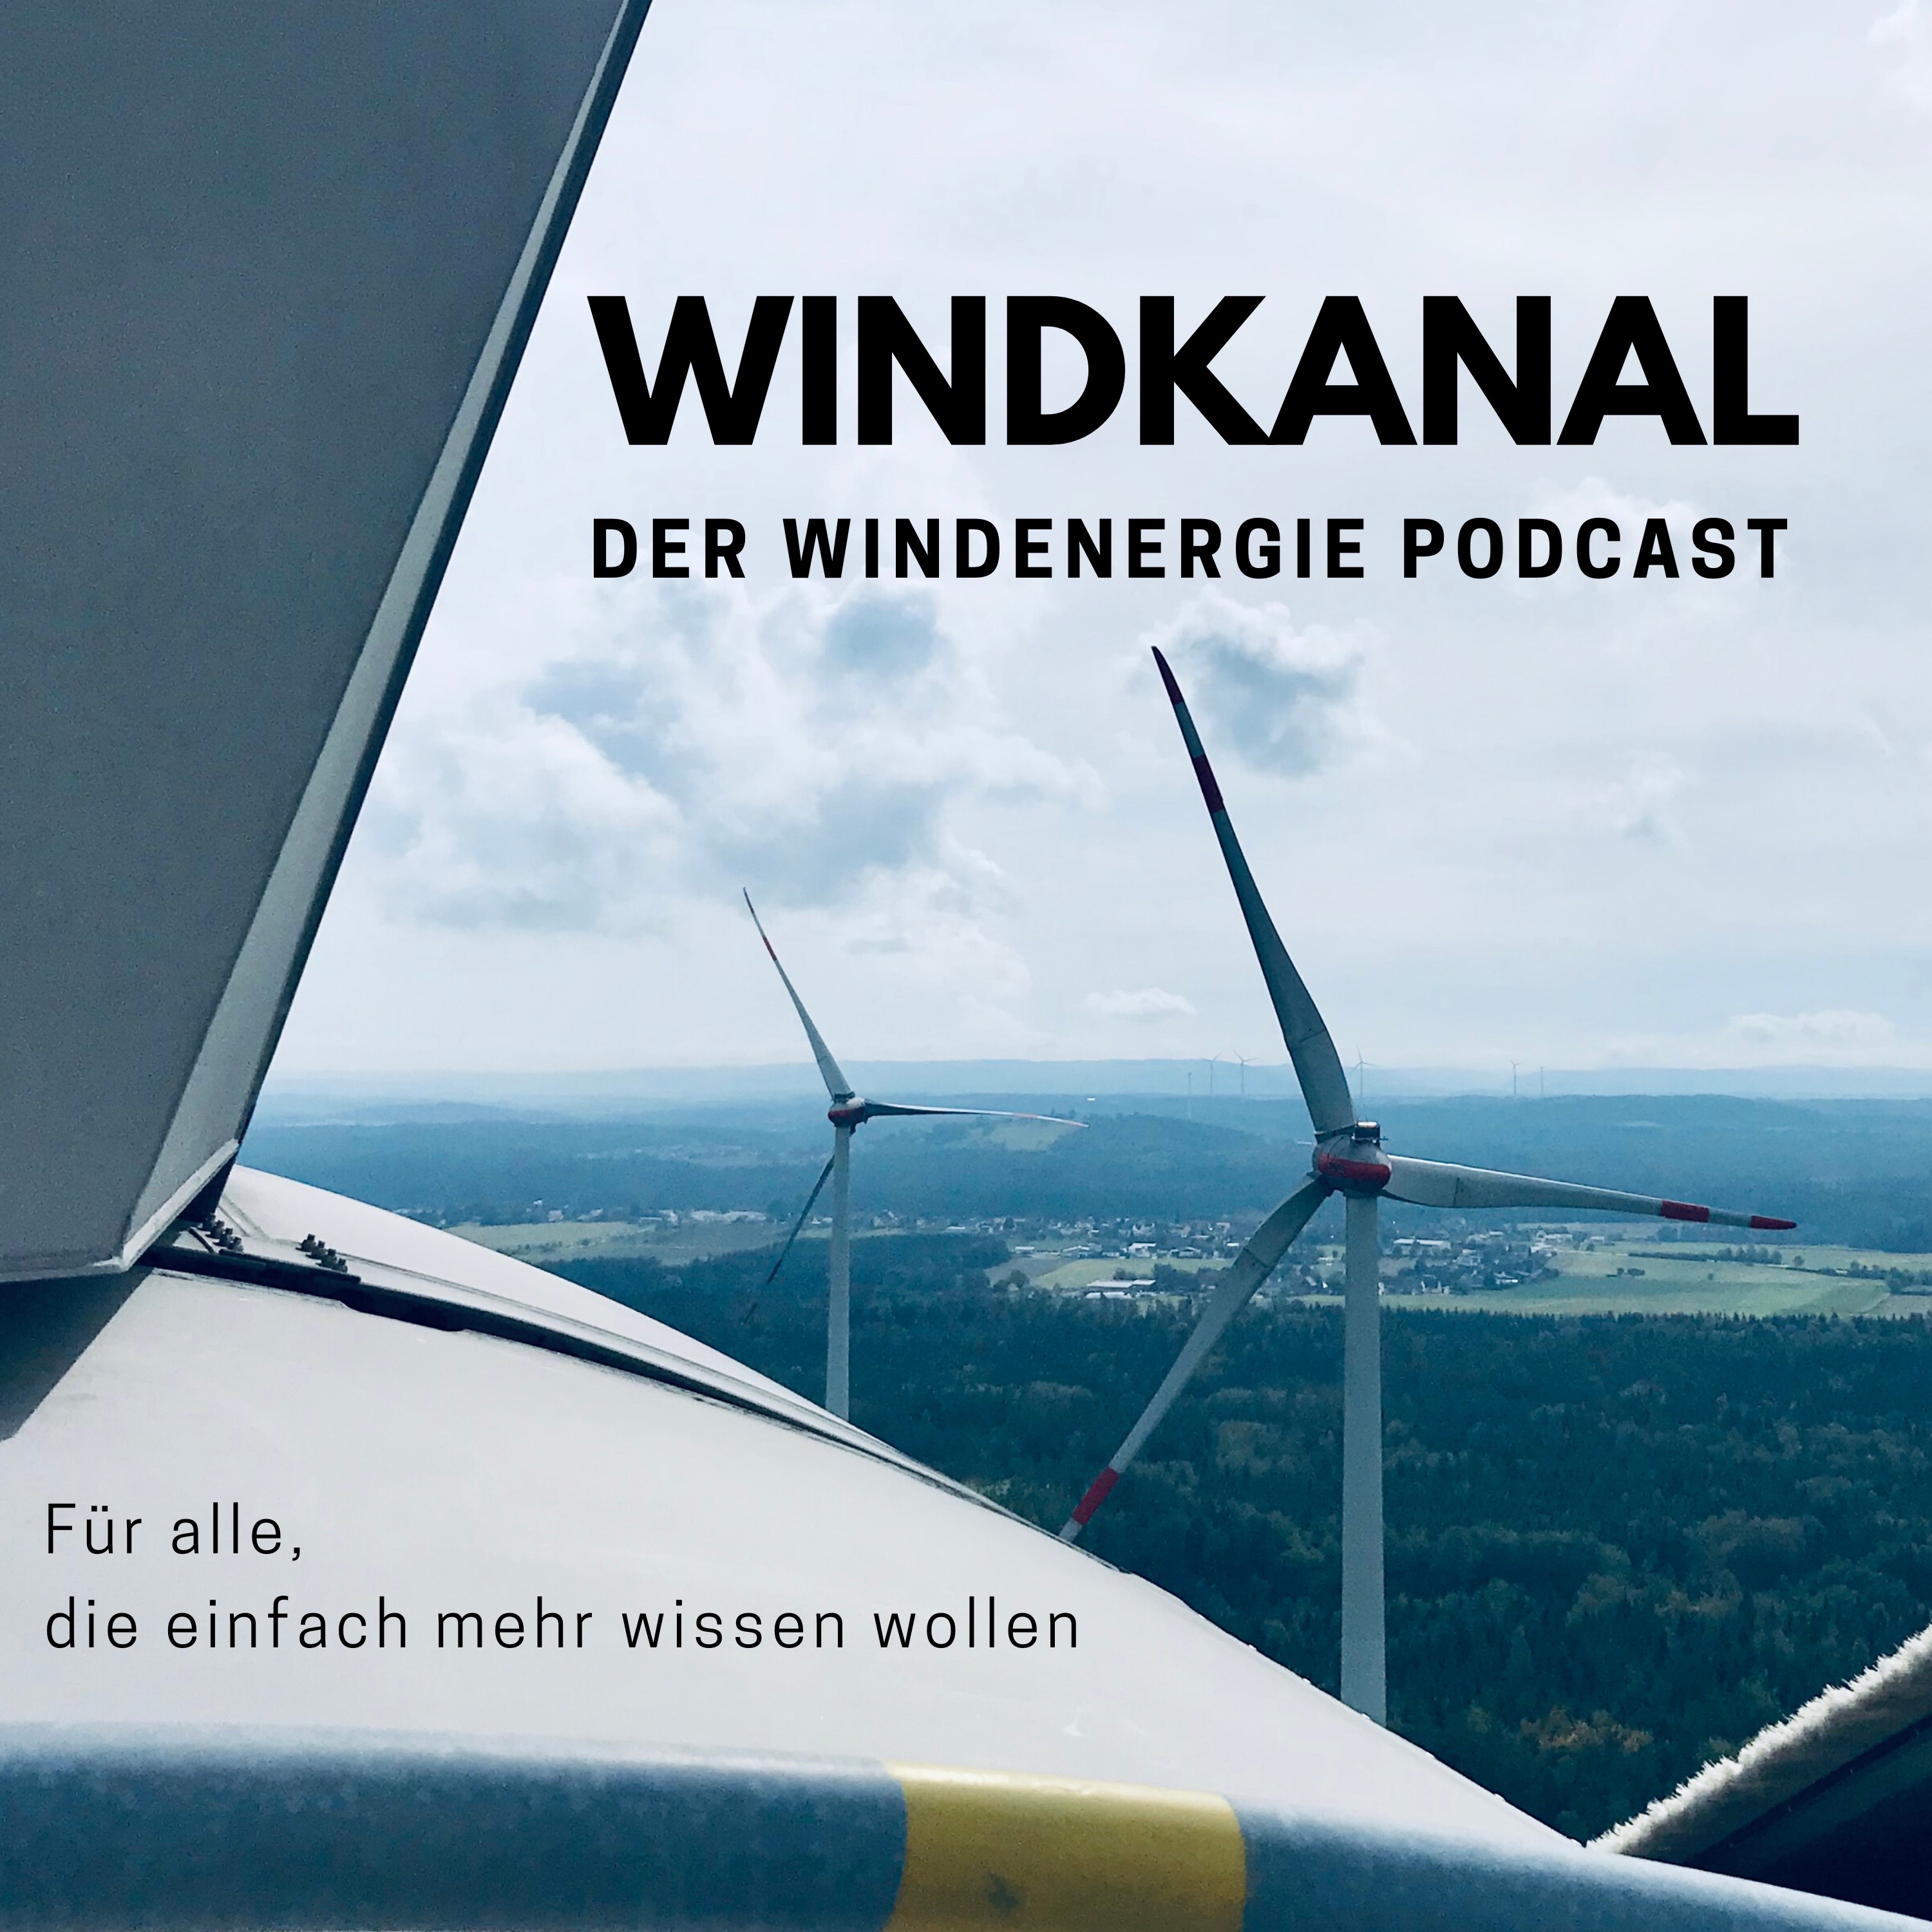 # 033. Rückbau von Windenergieanlagen (2) -  Abenteuer Altanlagenabbau mit Jens Monsees